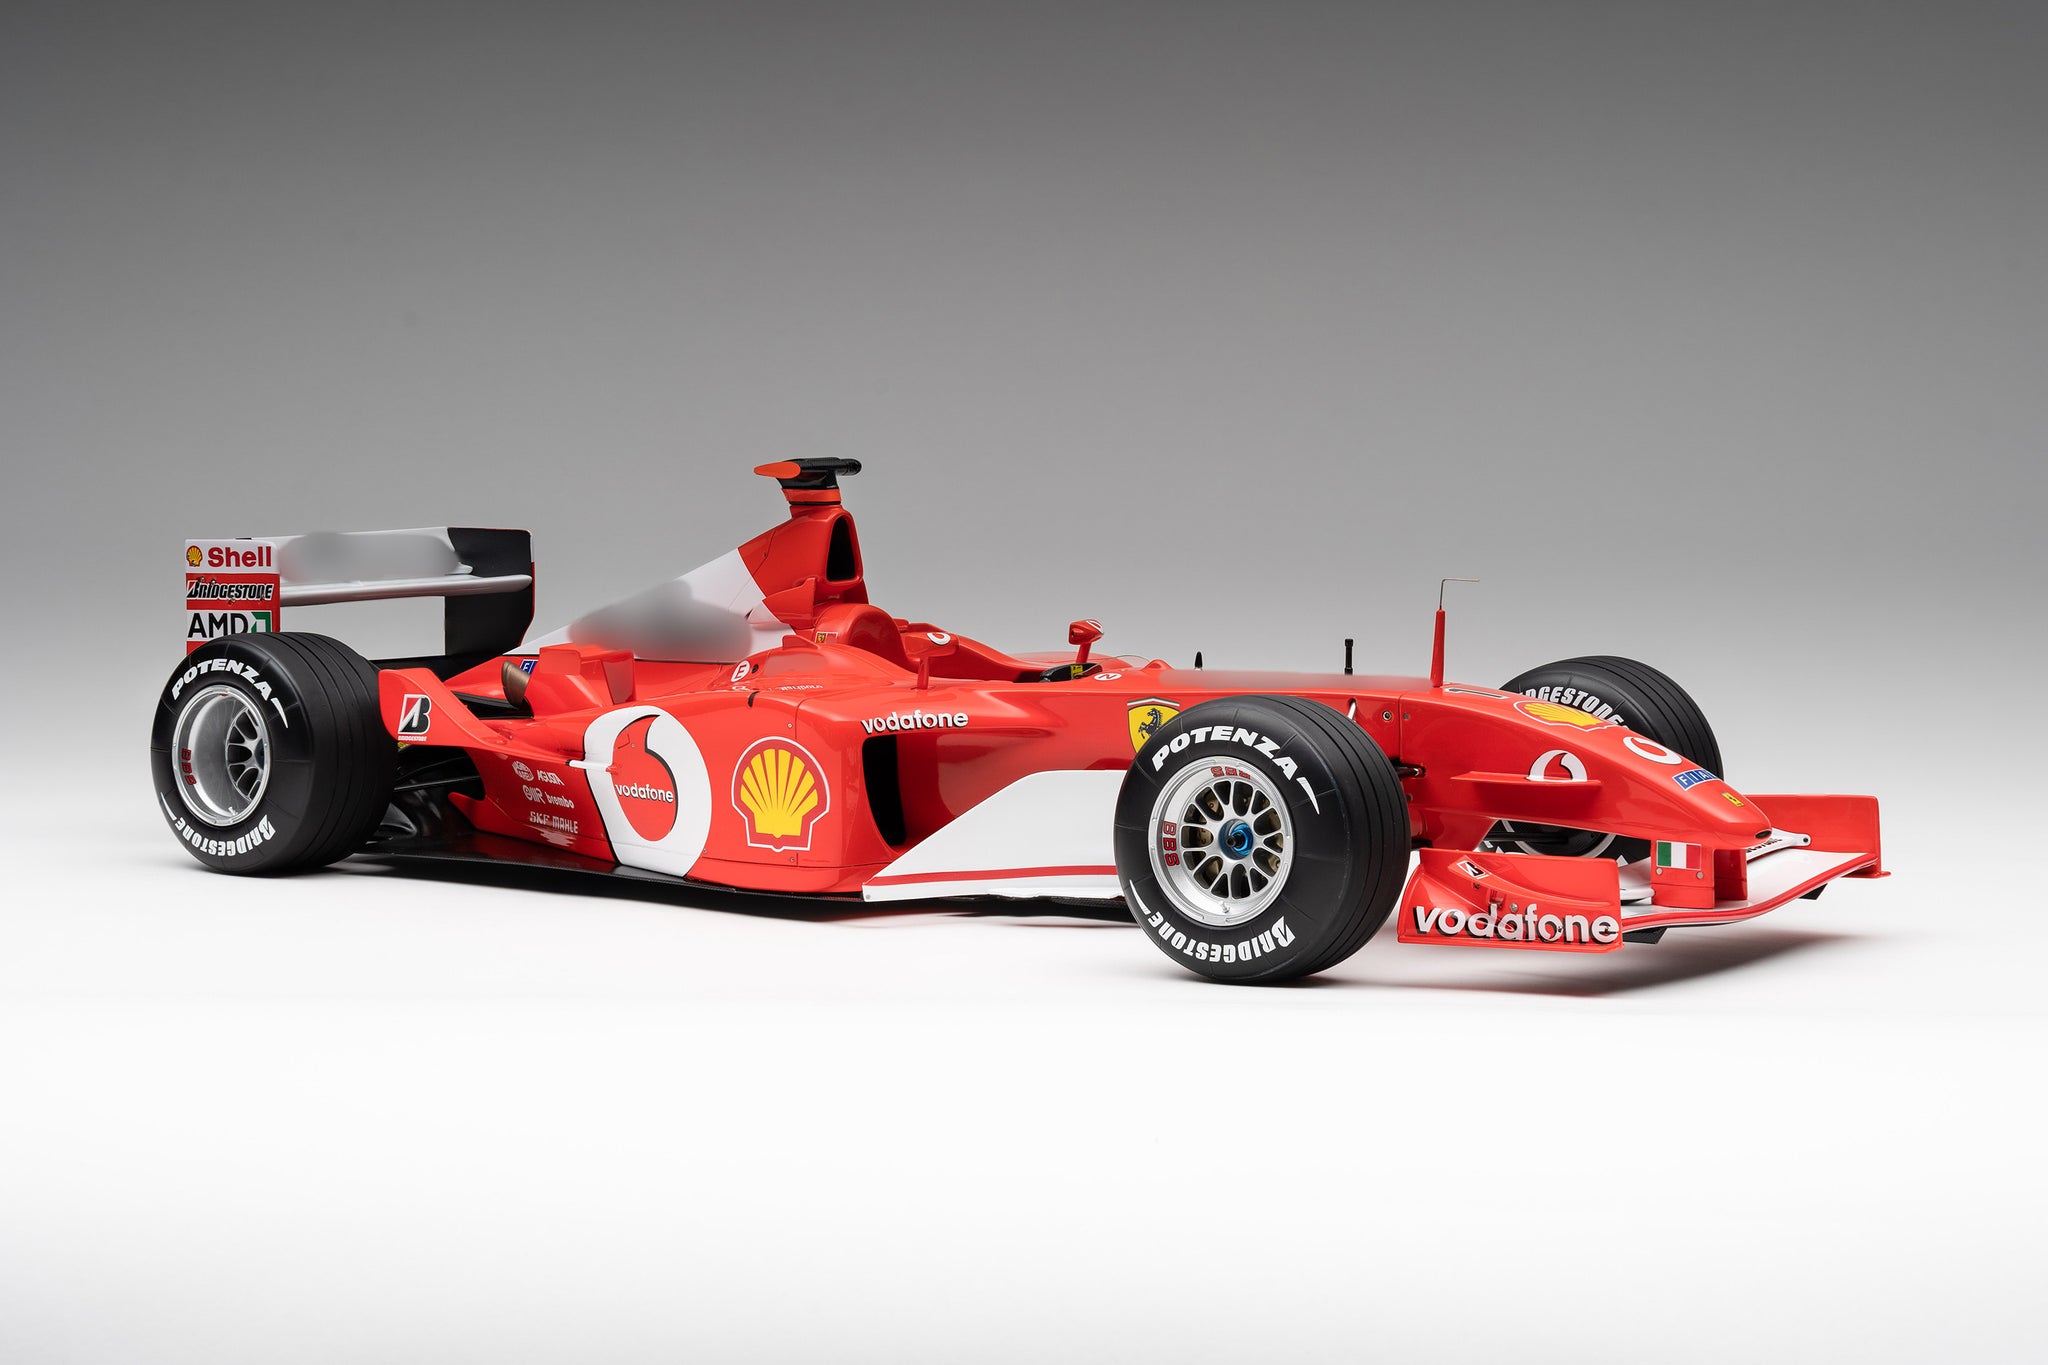 Ferrari F2002 at 1:8 scale